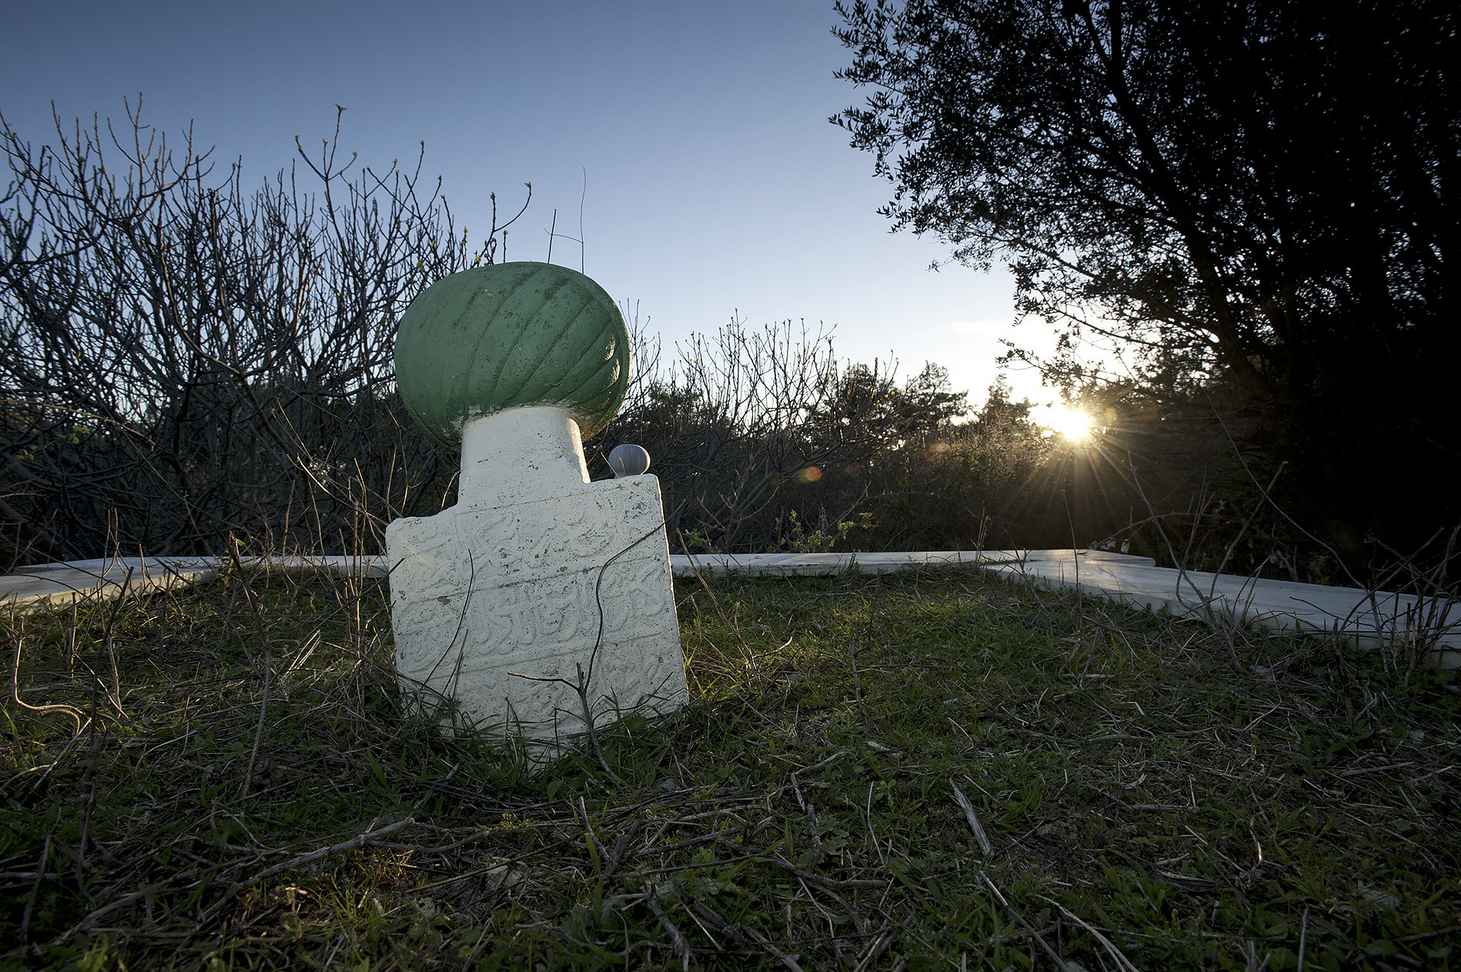 صورة حديثة لعلامة قبر وحيد يعلوها حجر فيروزي في المقدمة مع غروب الشمس في الخلفية